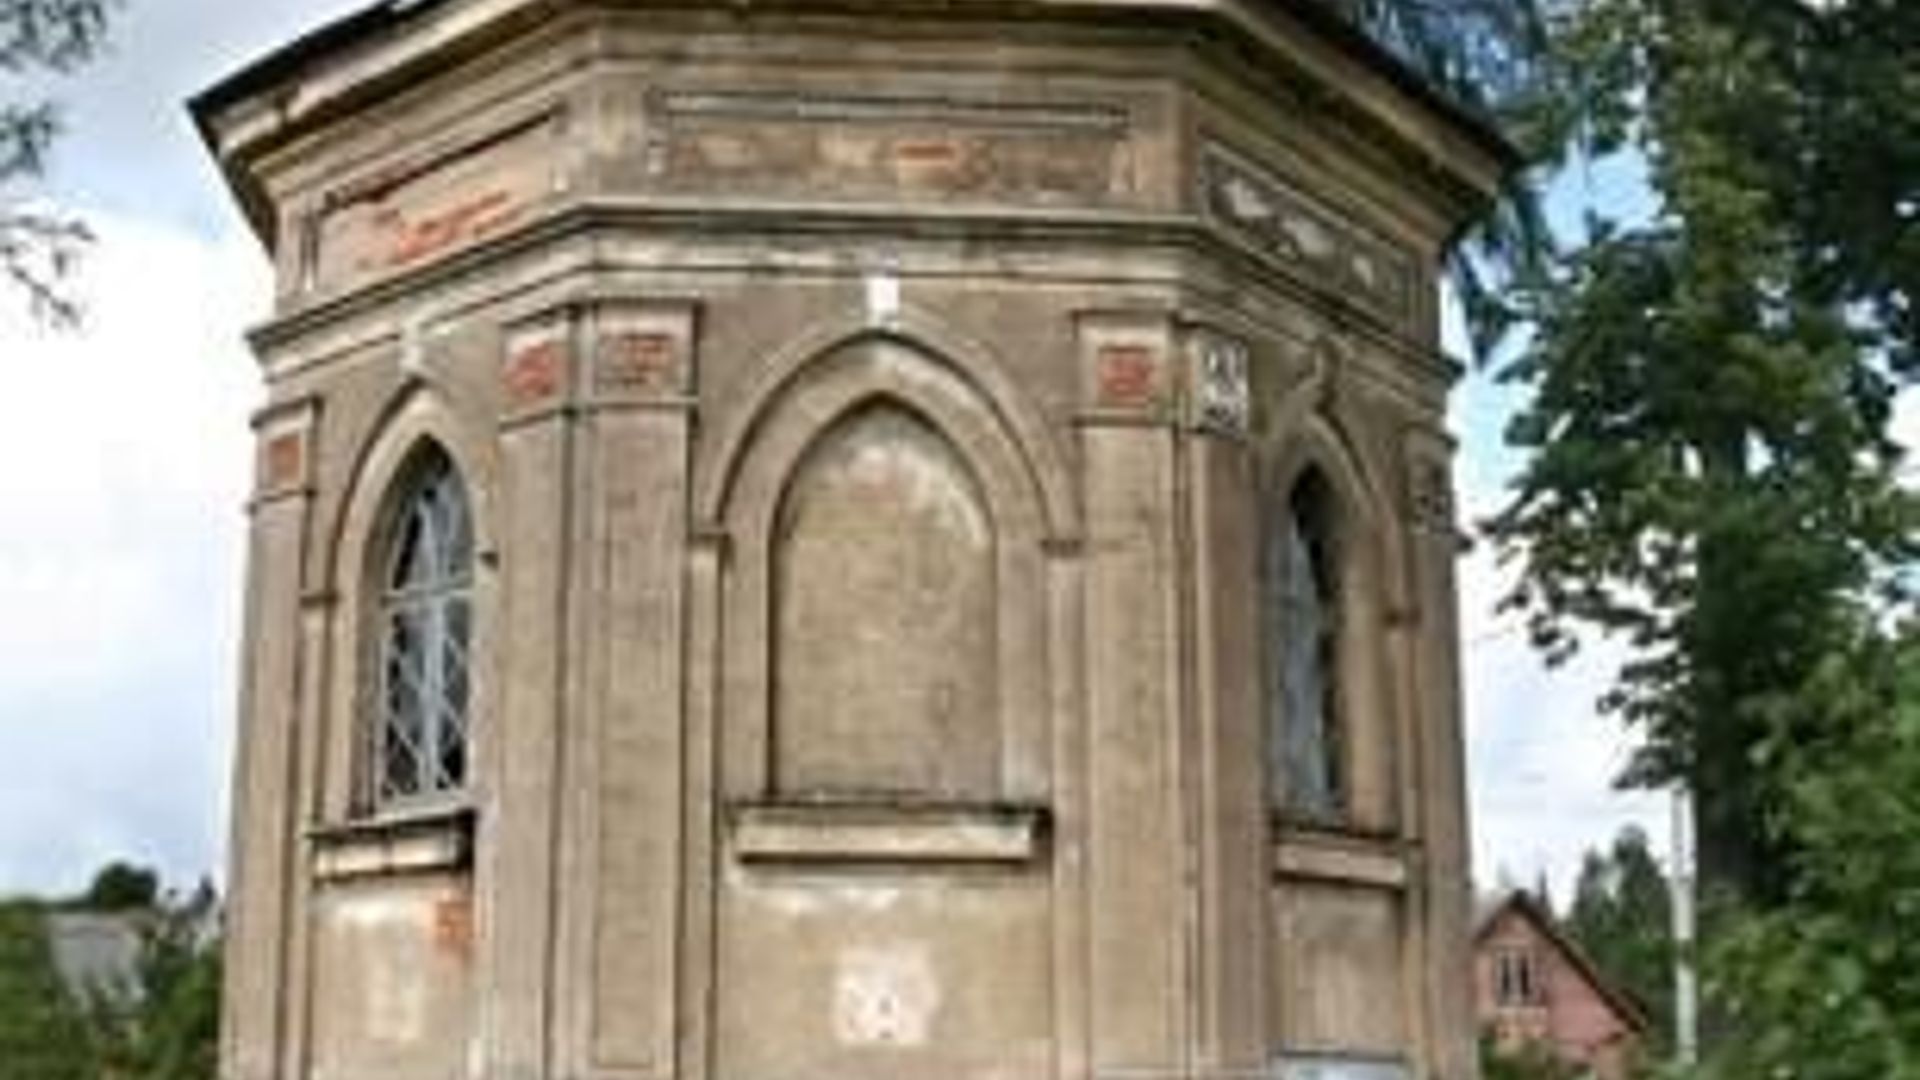 Tytuvėnai Chapel and Mausoleum